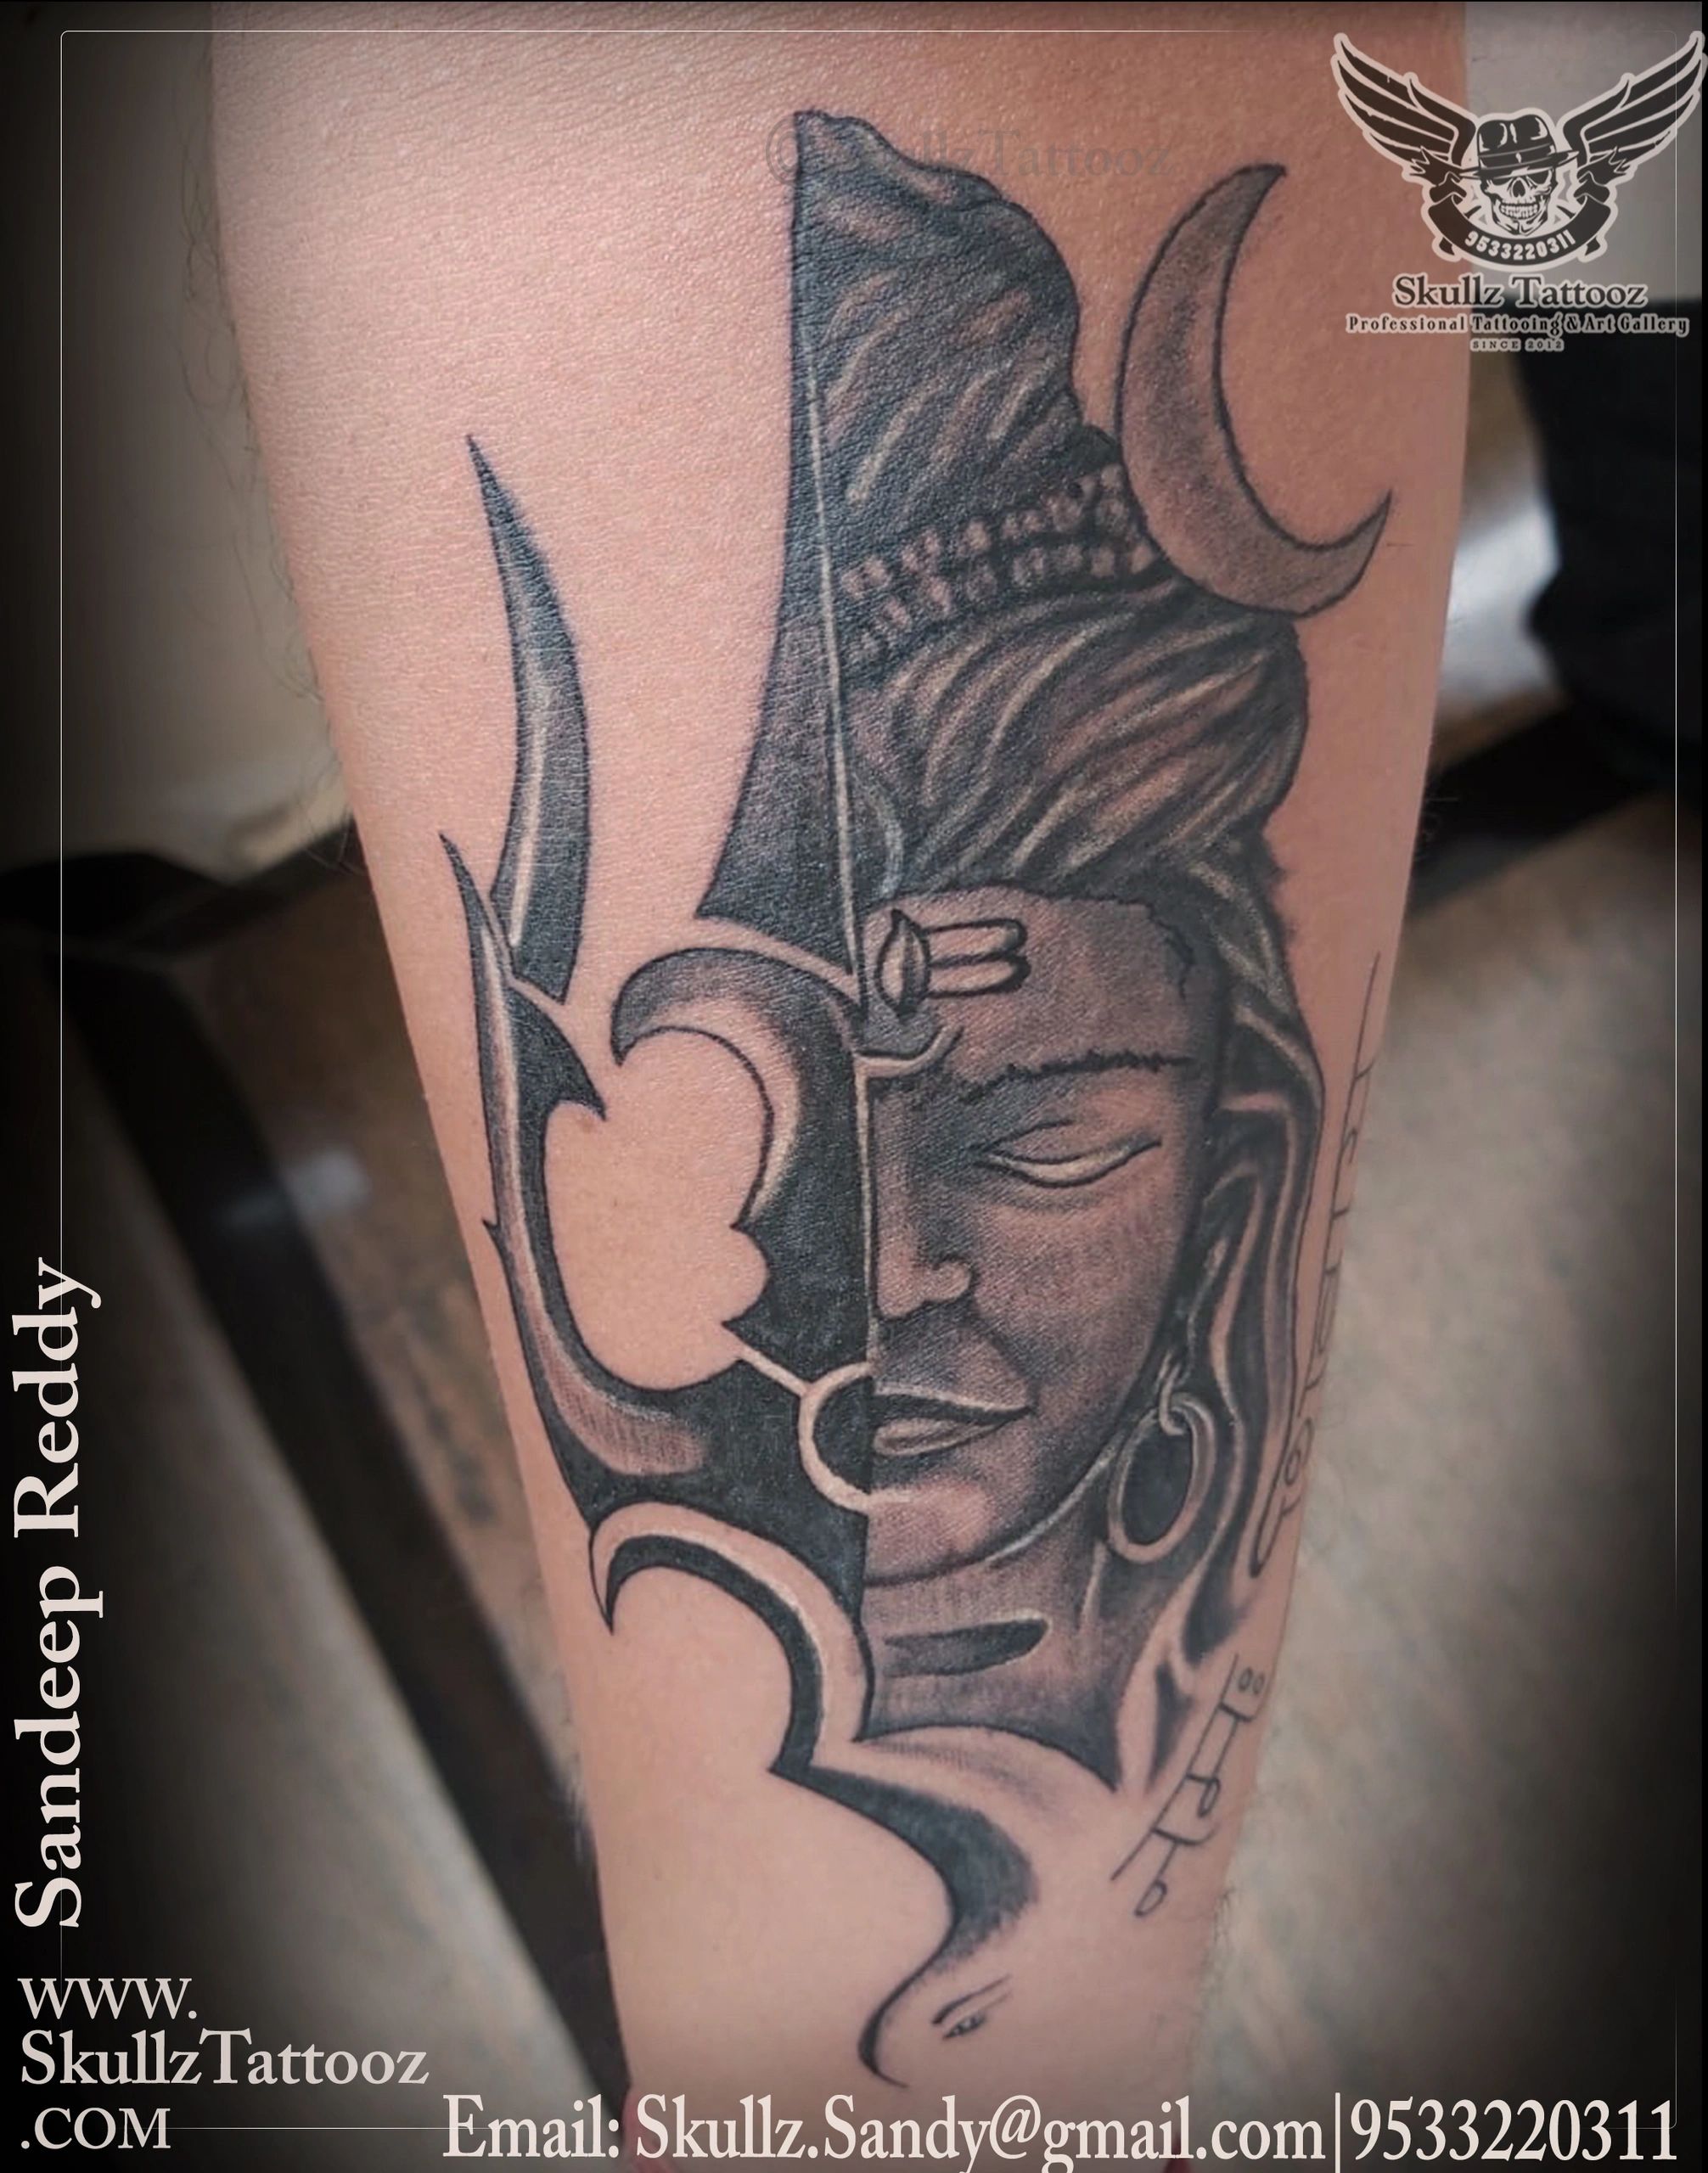 lord shiva tattoo  angry shiva tattoo  lordshivatattoo by  ranbertattooist dream ink tattooz  YouTube